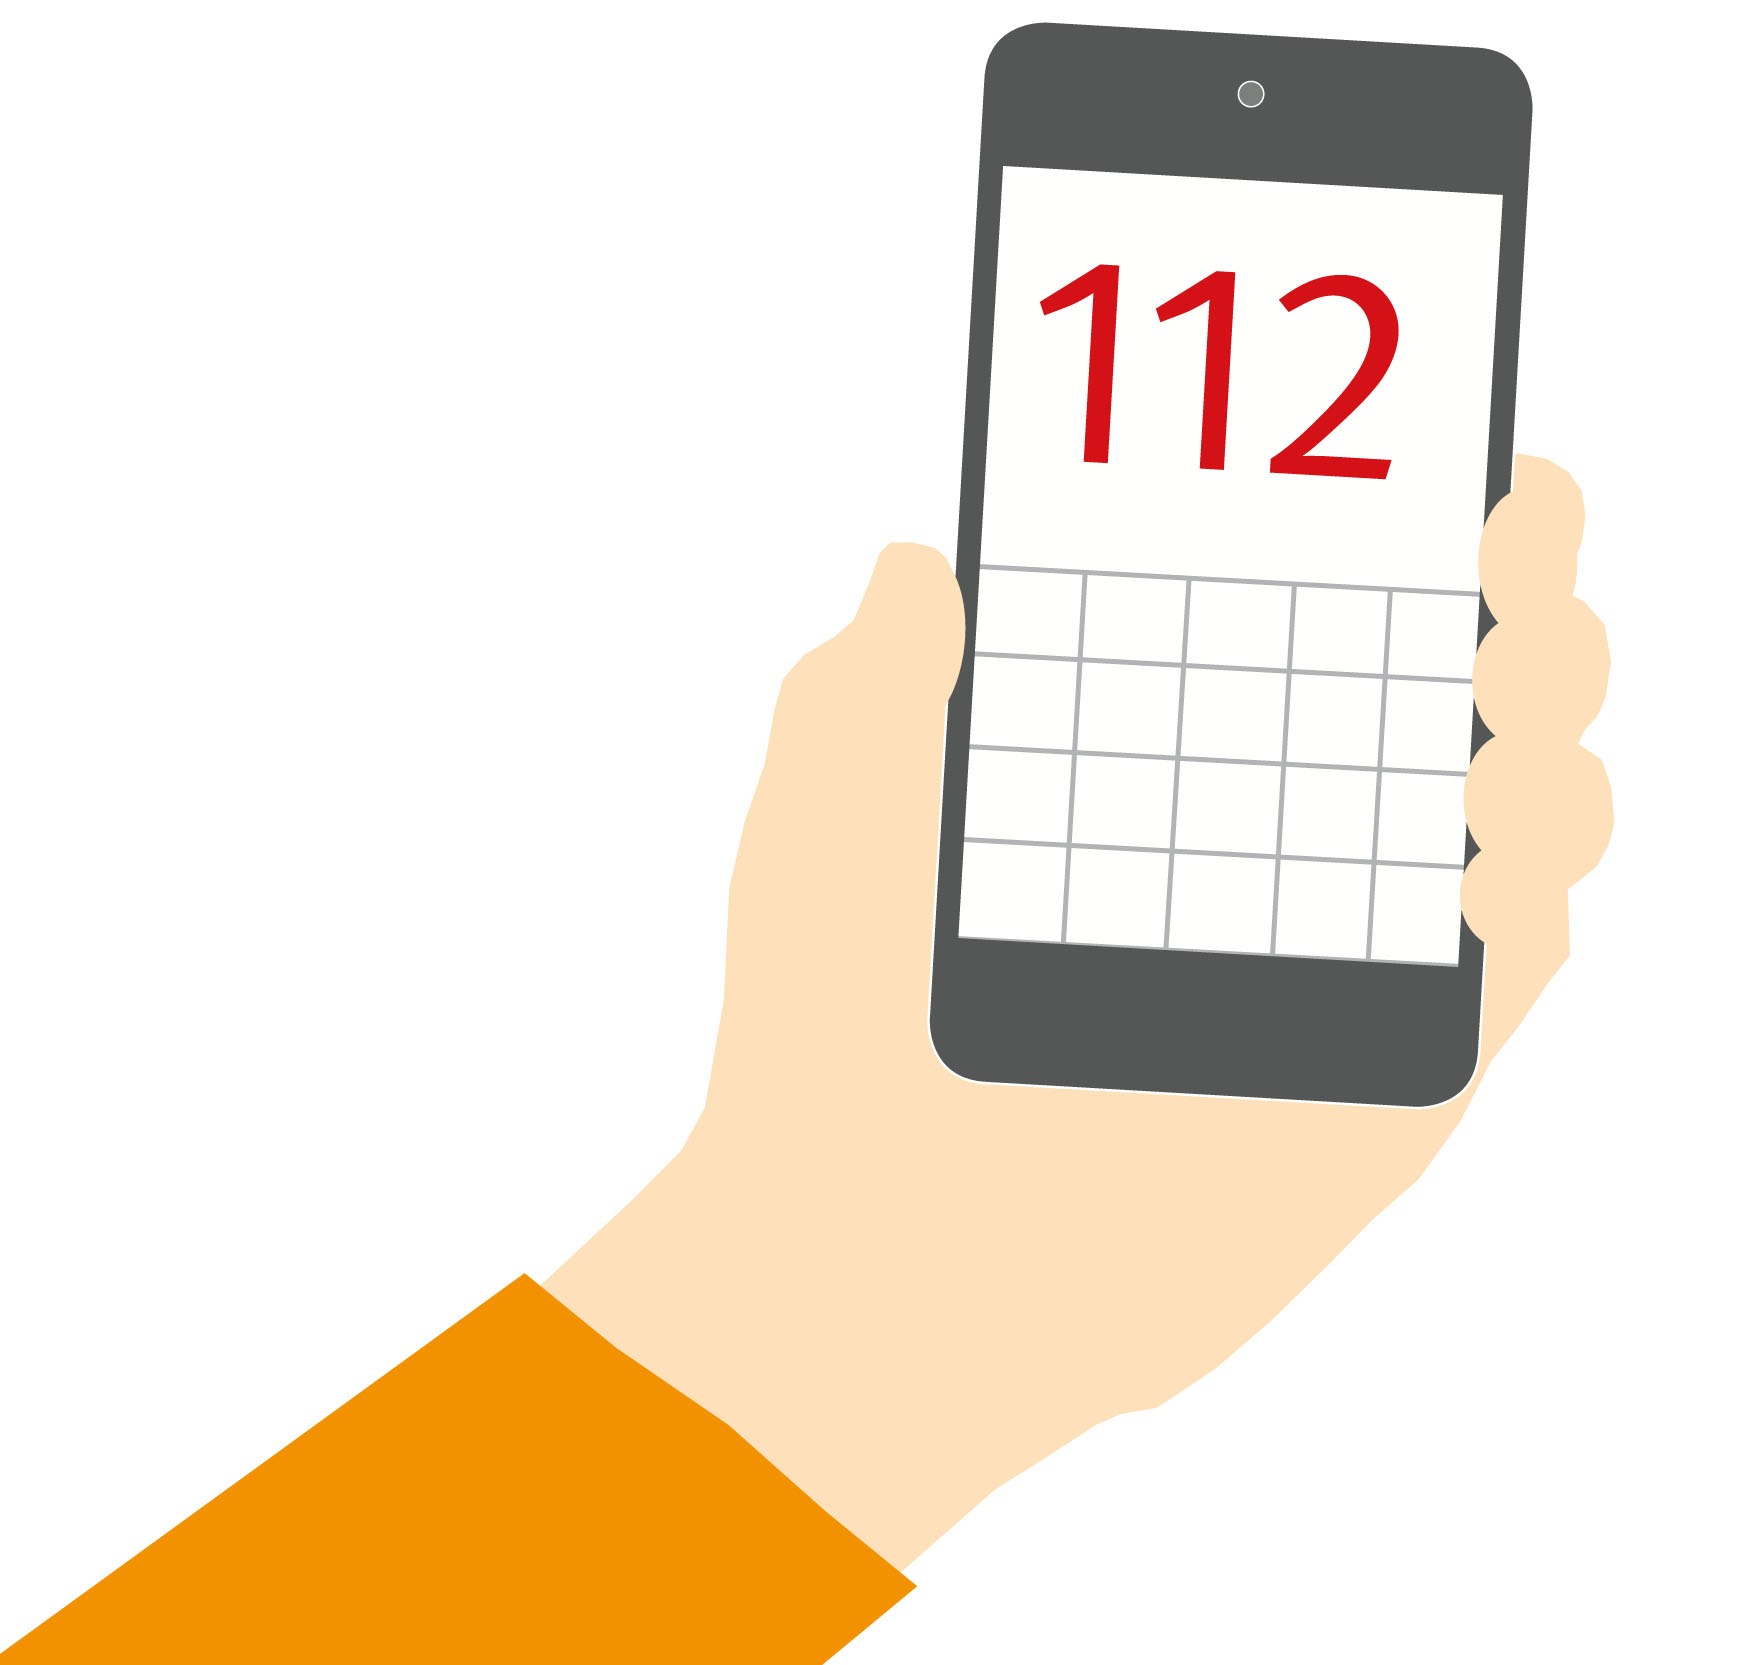 Ein Smartphone in der Hand, auf dem Display steht in großen Ziffern die europaweite Notrufnummer 112